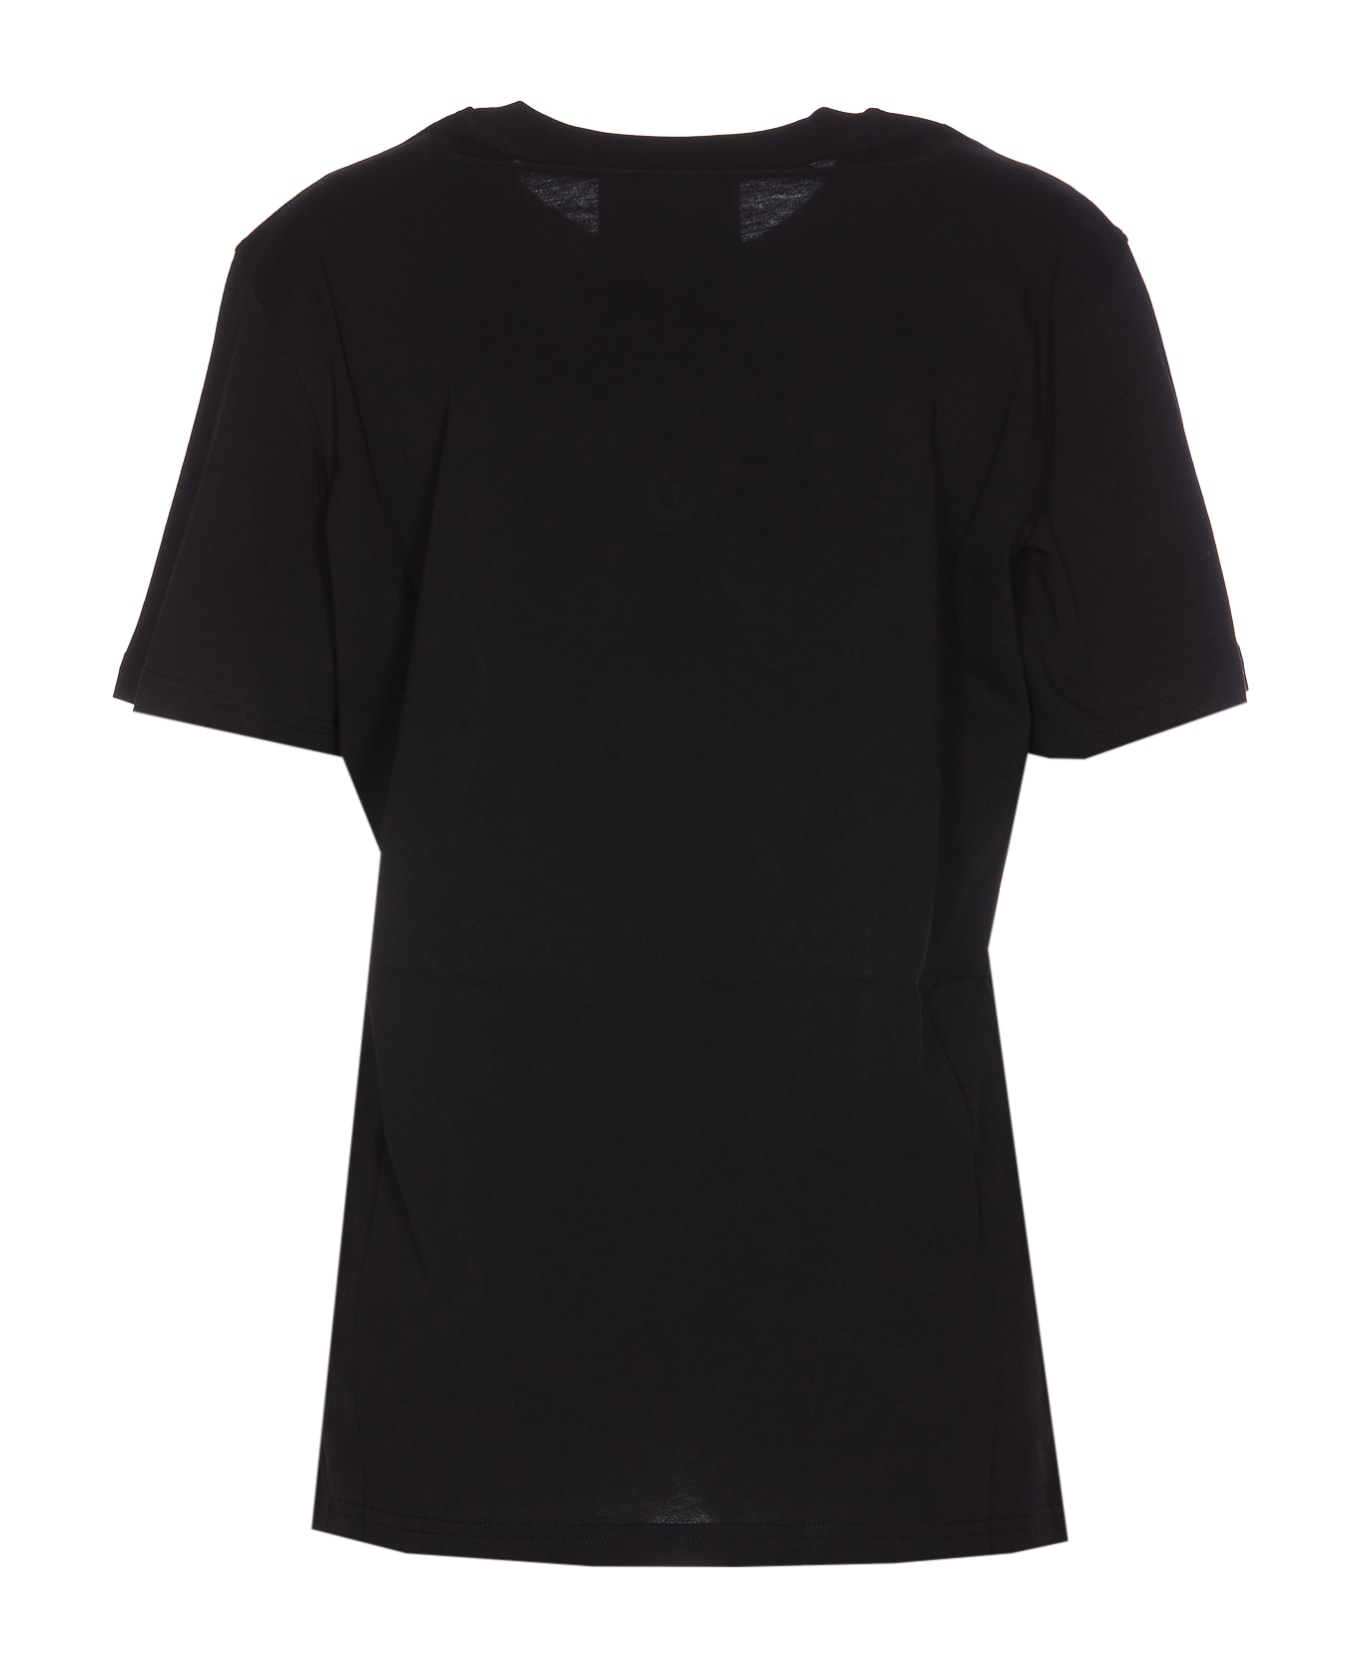 Moschino Love We Trust T-shirt - Black